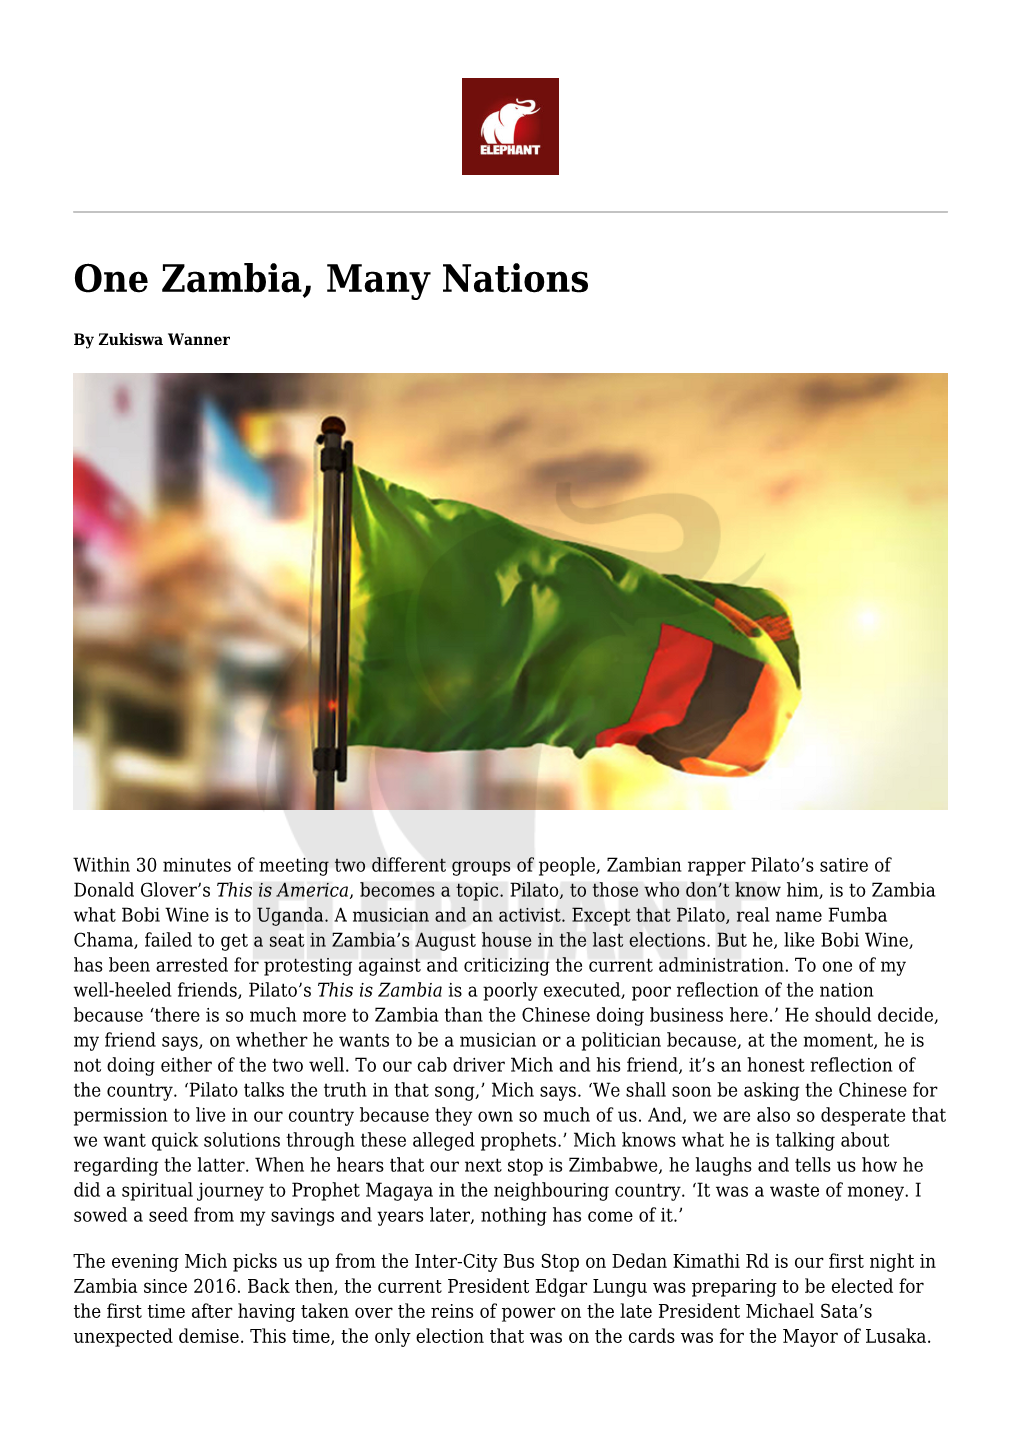 One Zambia, Many Nations,ZIMBABWE: the More